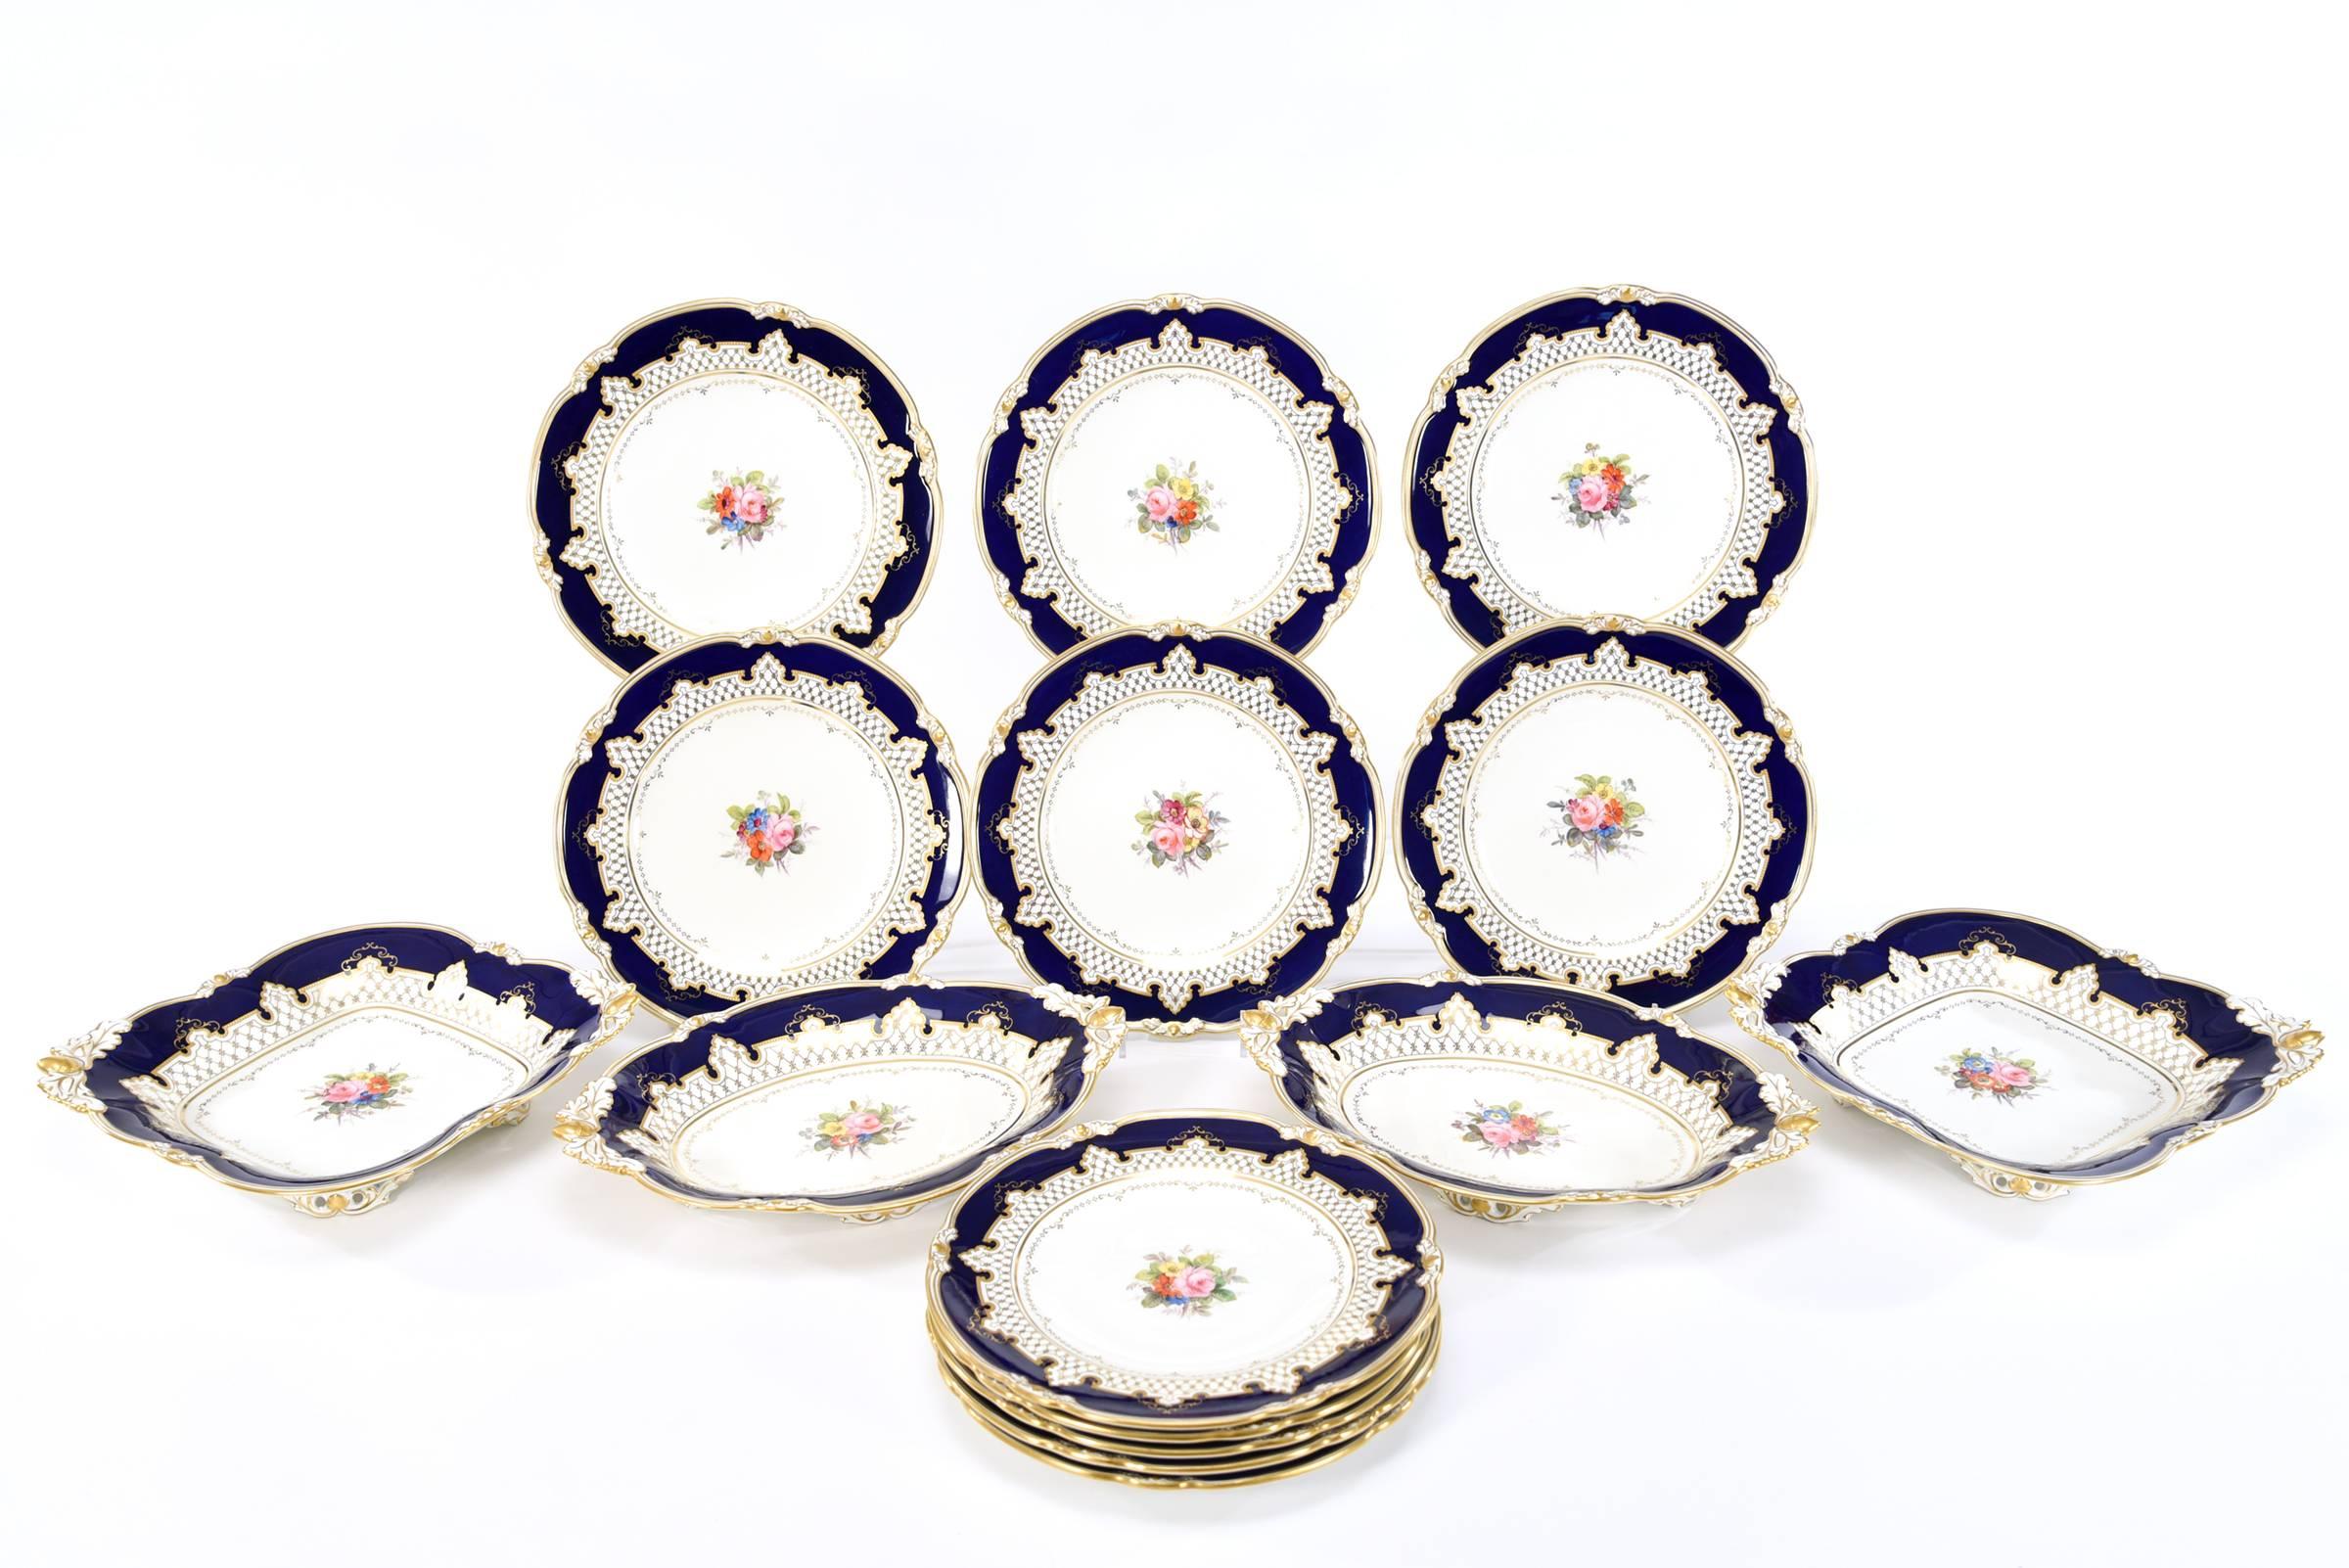 Ce service à dessert Royal Crown Derby de 15 pièces comprend 11 assiettes de 9 pouces, deux bols carrés et deux pièces de service à pied en forme de losange, qui sont classiques et polyvalentes. Chaque pièce est peinte à la main de bouquets floraux